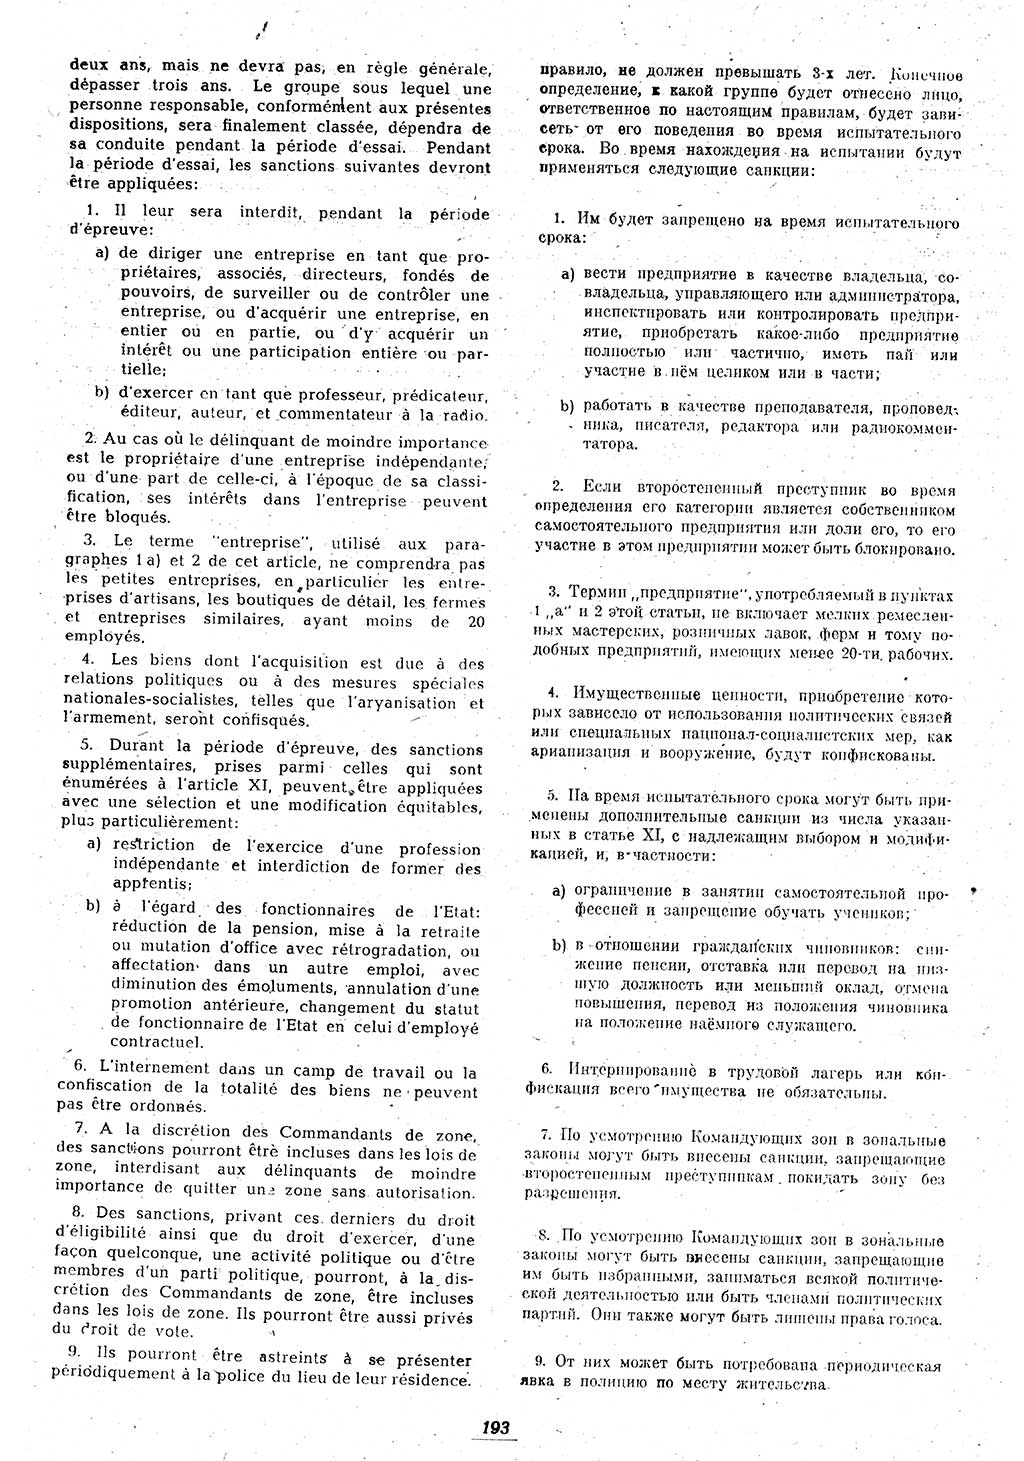 Amtsblatt des Kontrollrats (ABlKR) in Deutschland 1946, Seite 193/1 (ABlKR Dtl. 1946, S. 193/1)